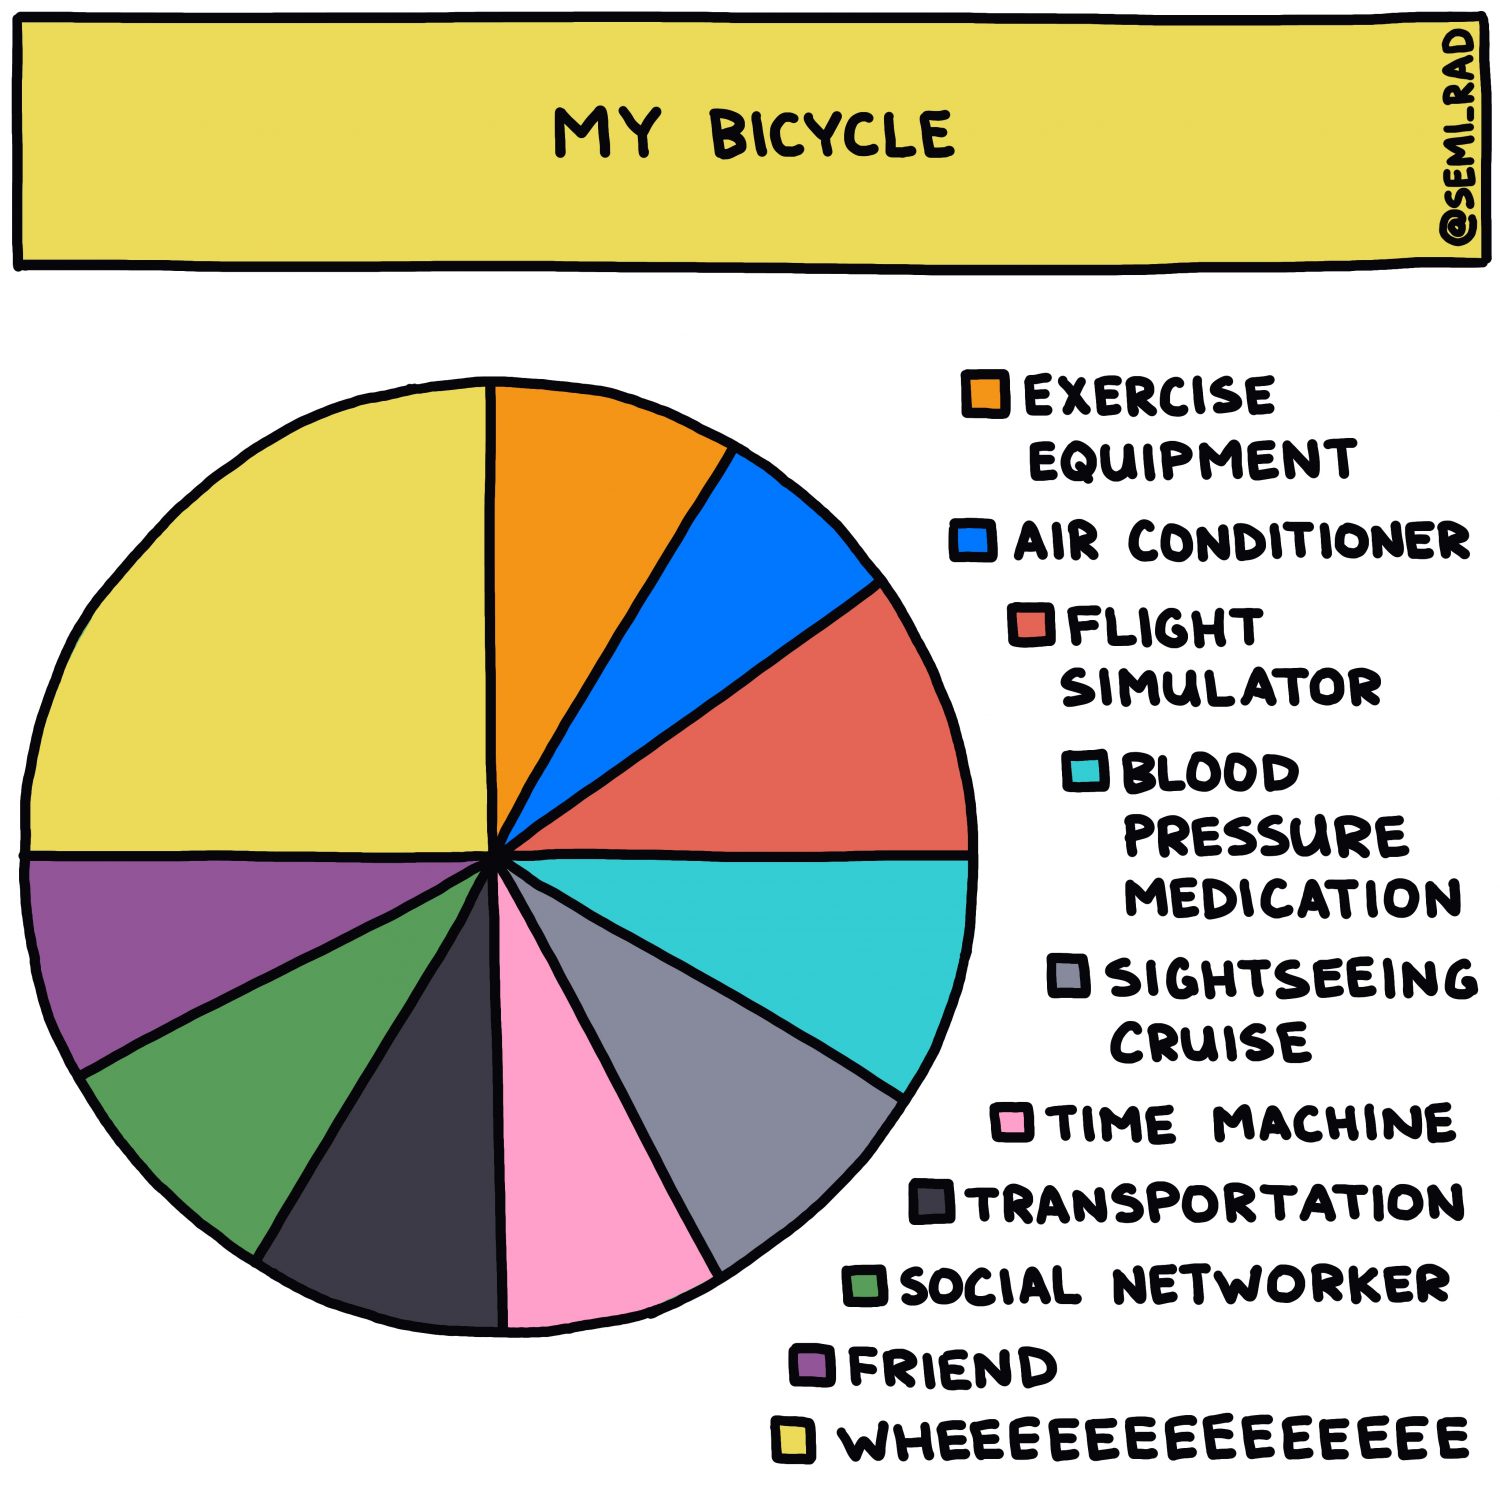 semi-rad chart: my bicycle